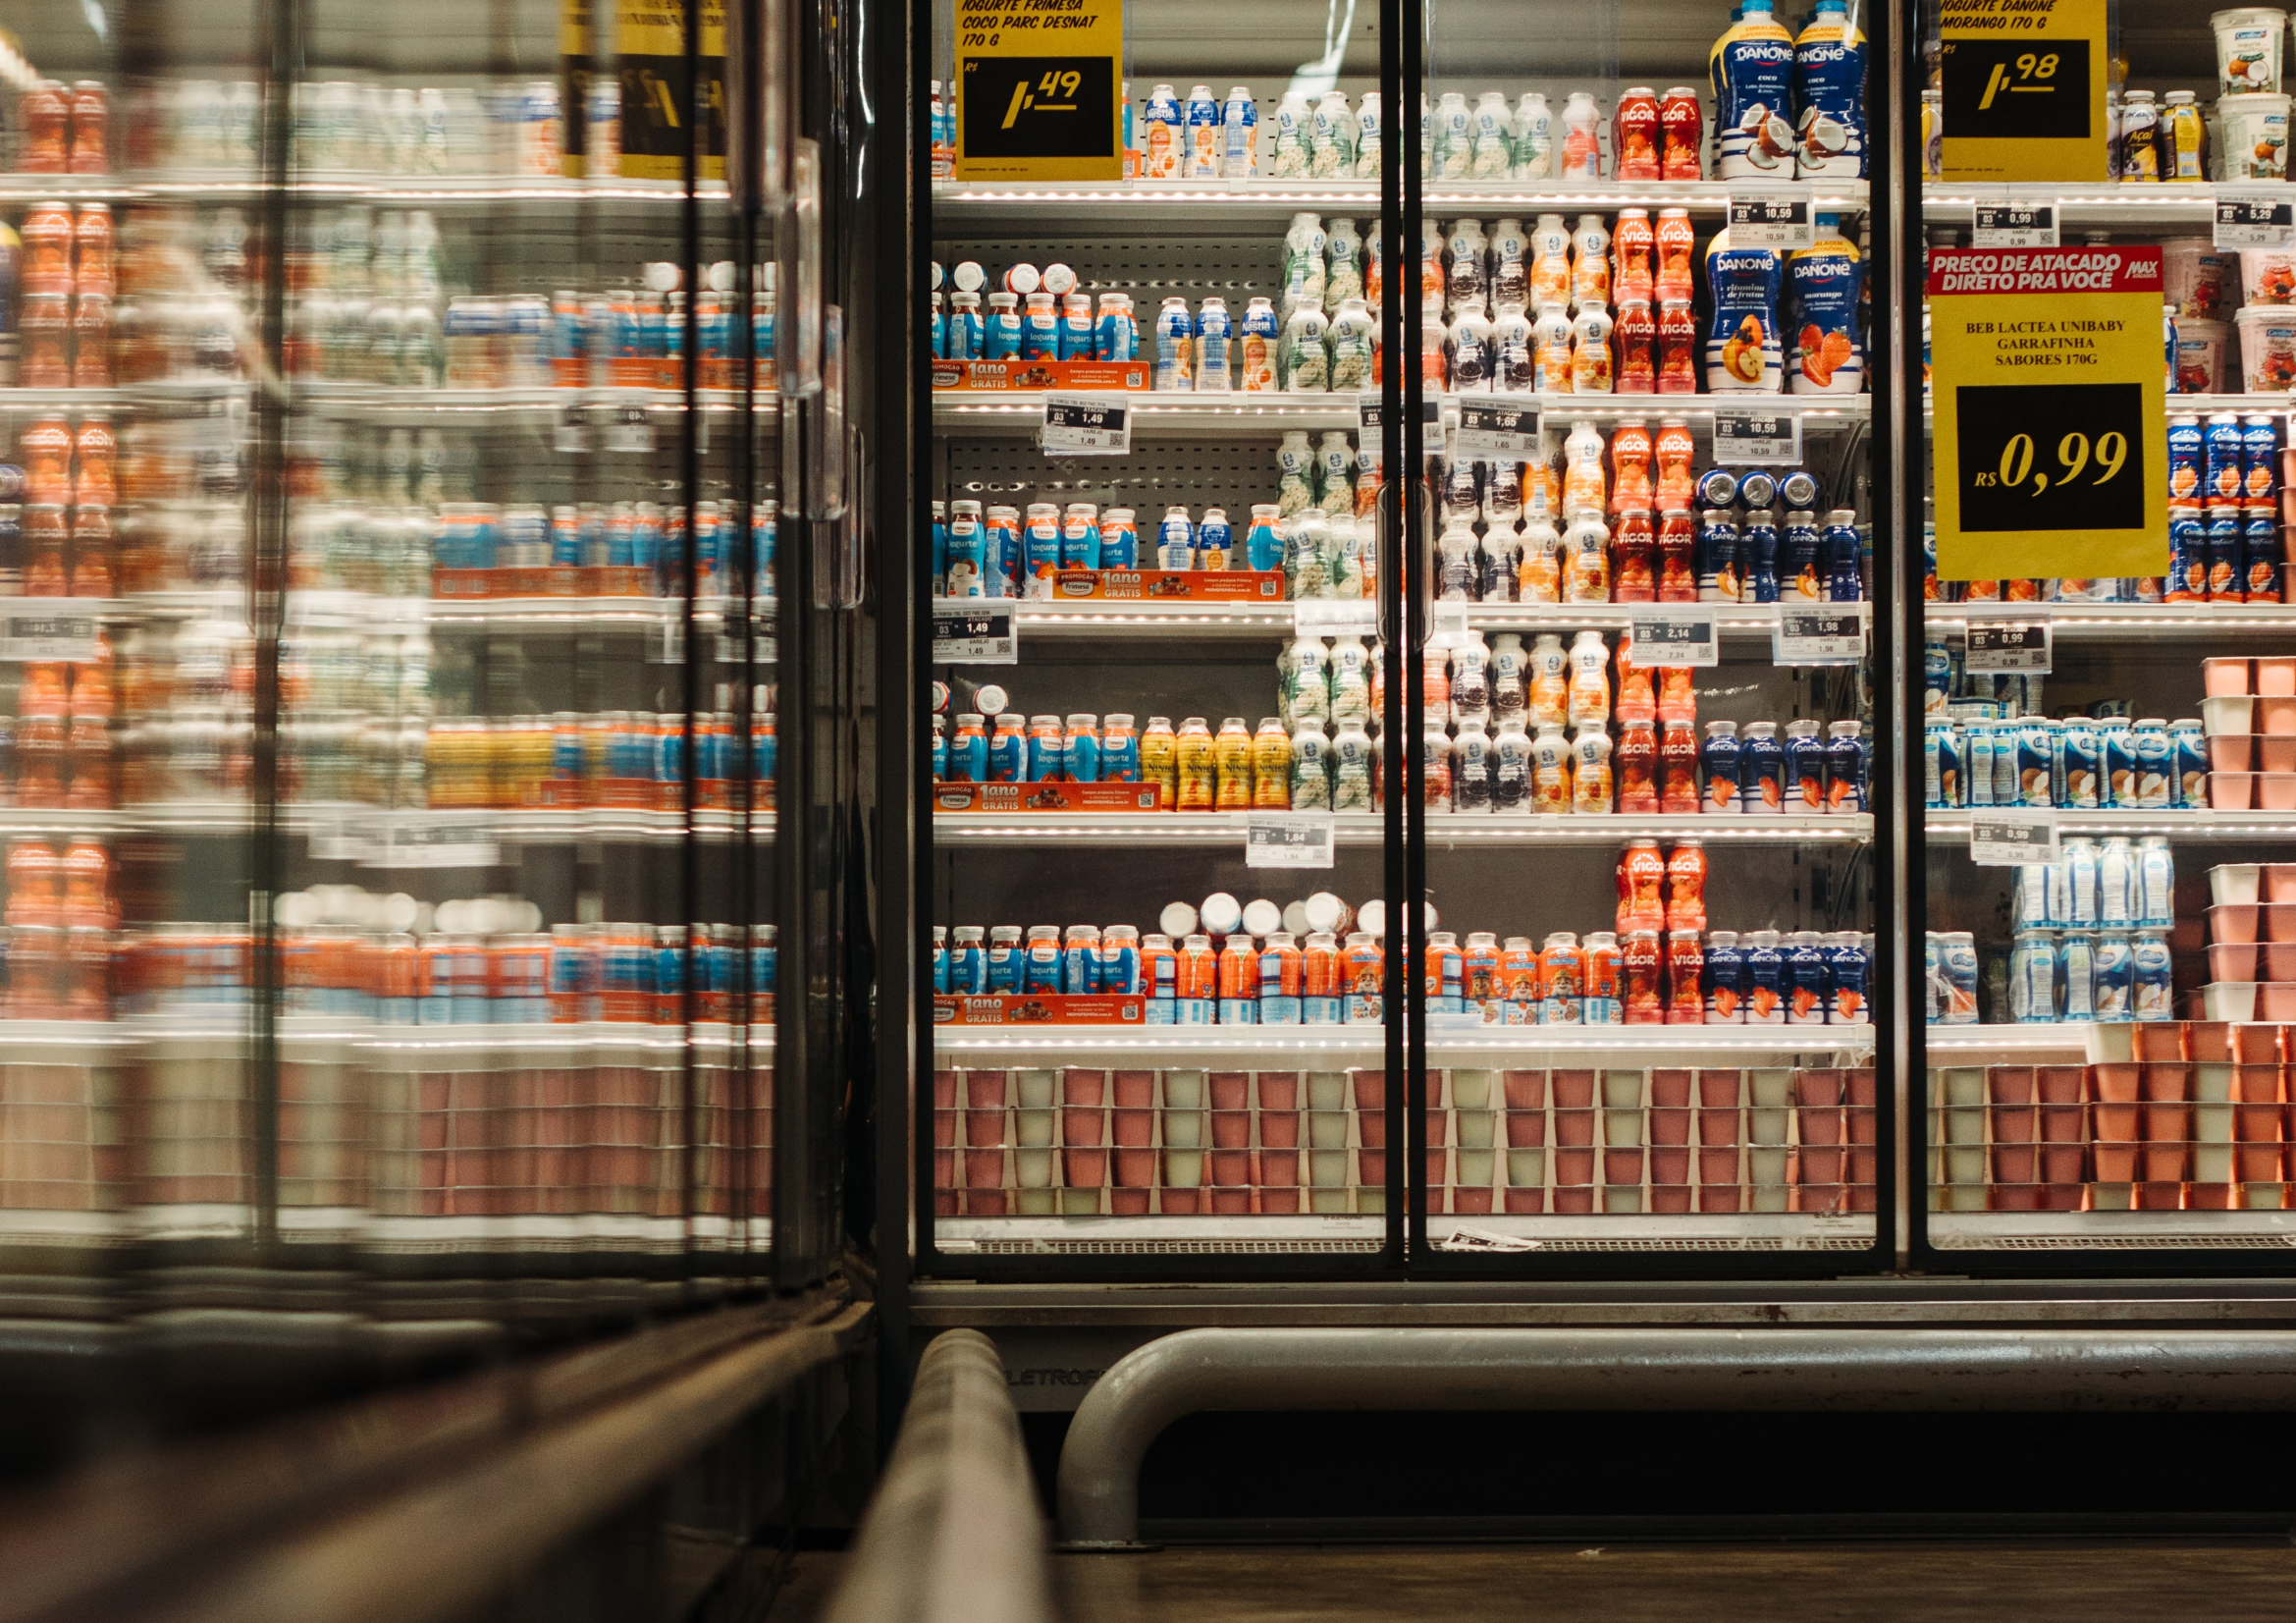 imagem de prateleiras em supermercados para ilustrar a definição de preço promocional